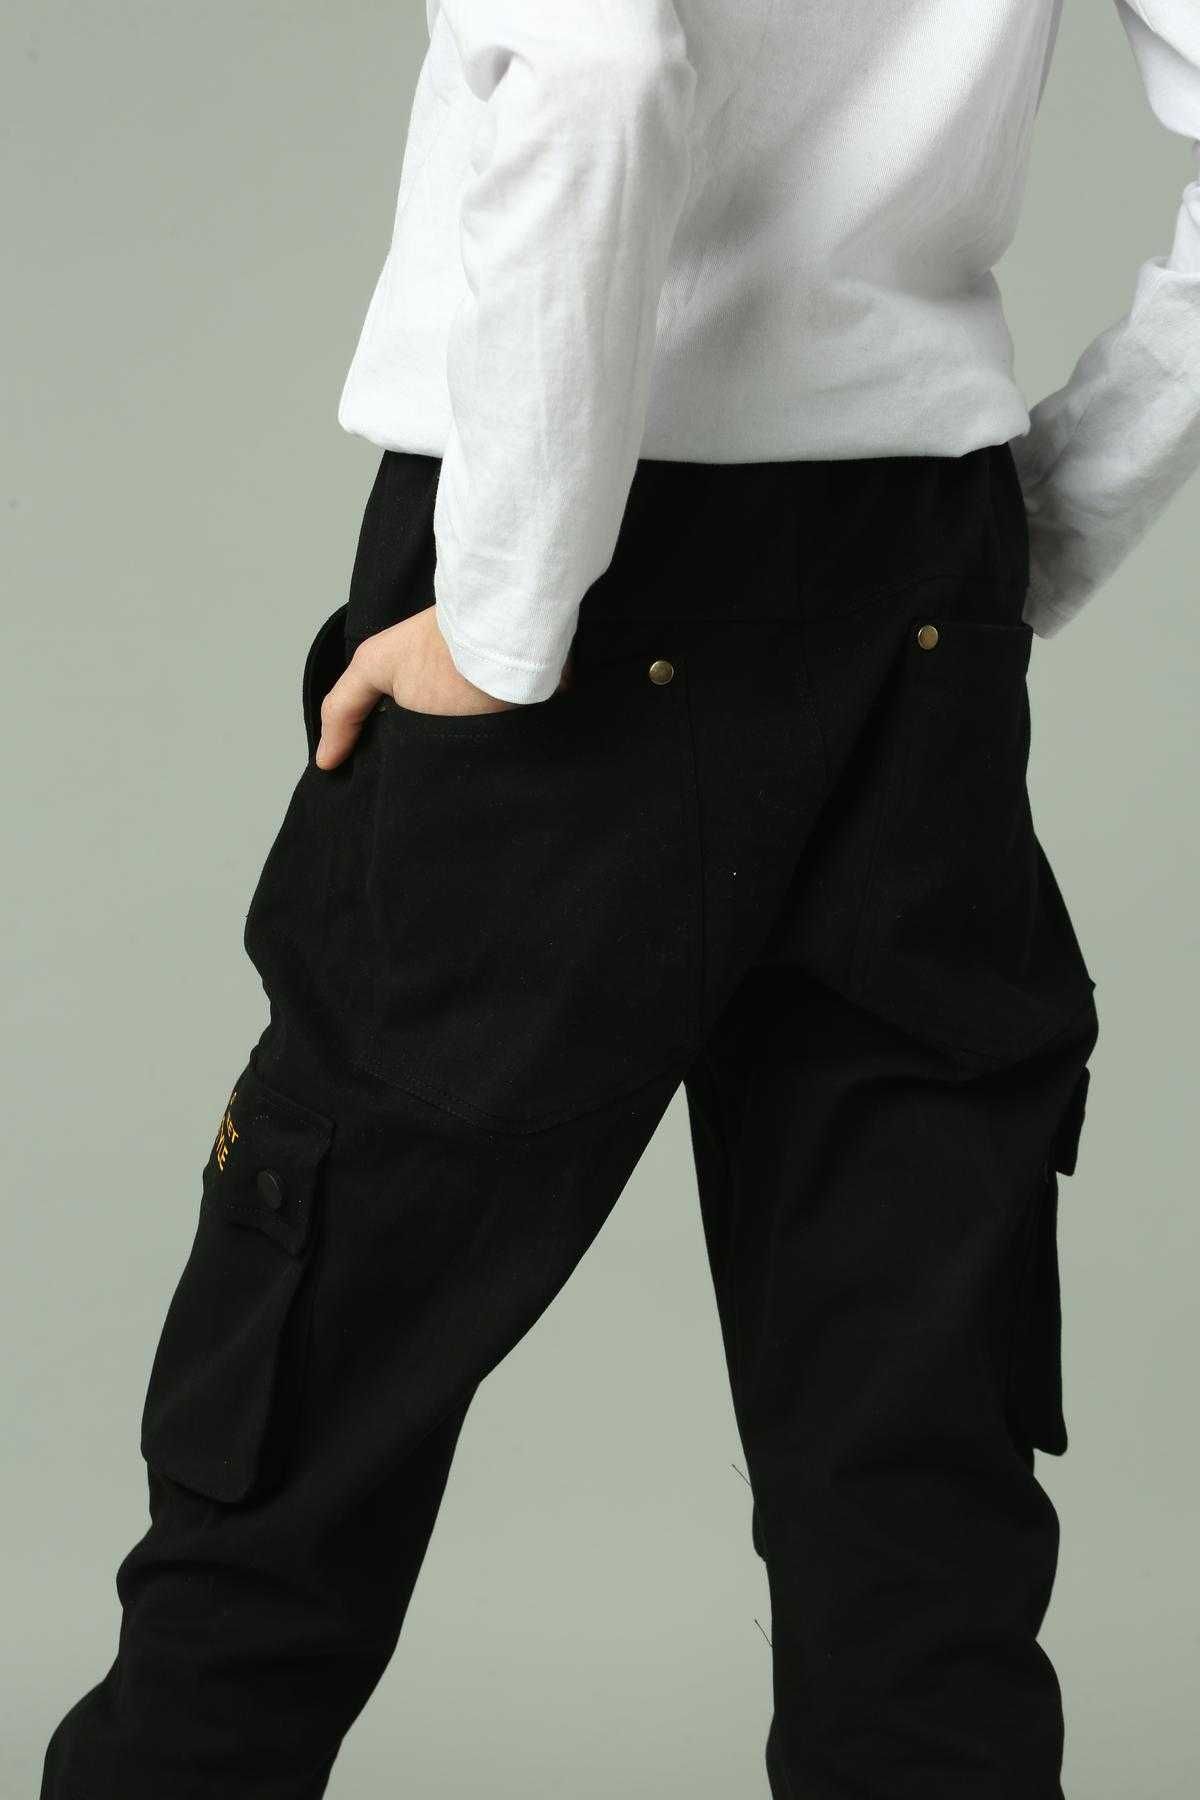 Дитячі штани Карго для хлопчика підлітка чорні з стильним модним напис